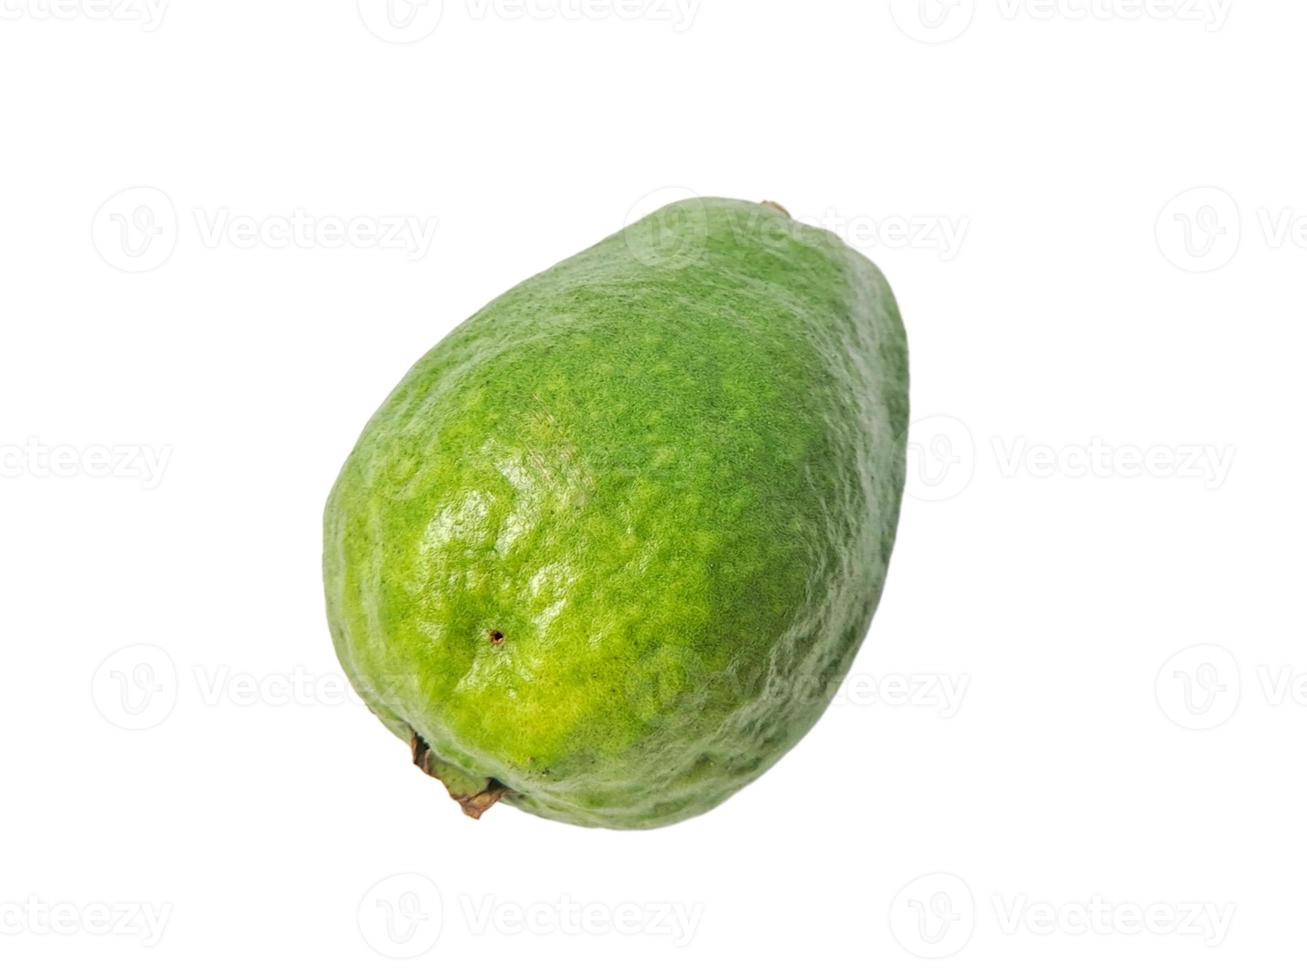 la goyave est un fruit tropical commun cultivé dans de nombreuses régions tropicales et subtropicales, goyave commune psidium goyave, goyave citron, goyave pomme photo